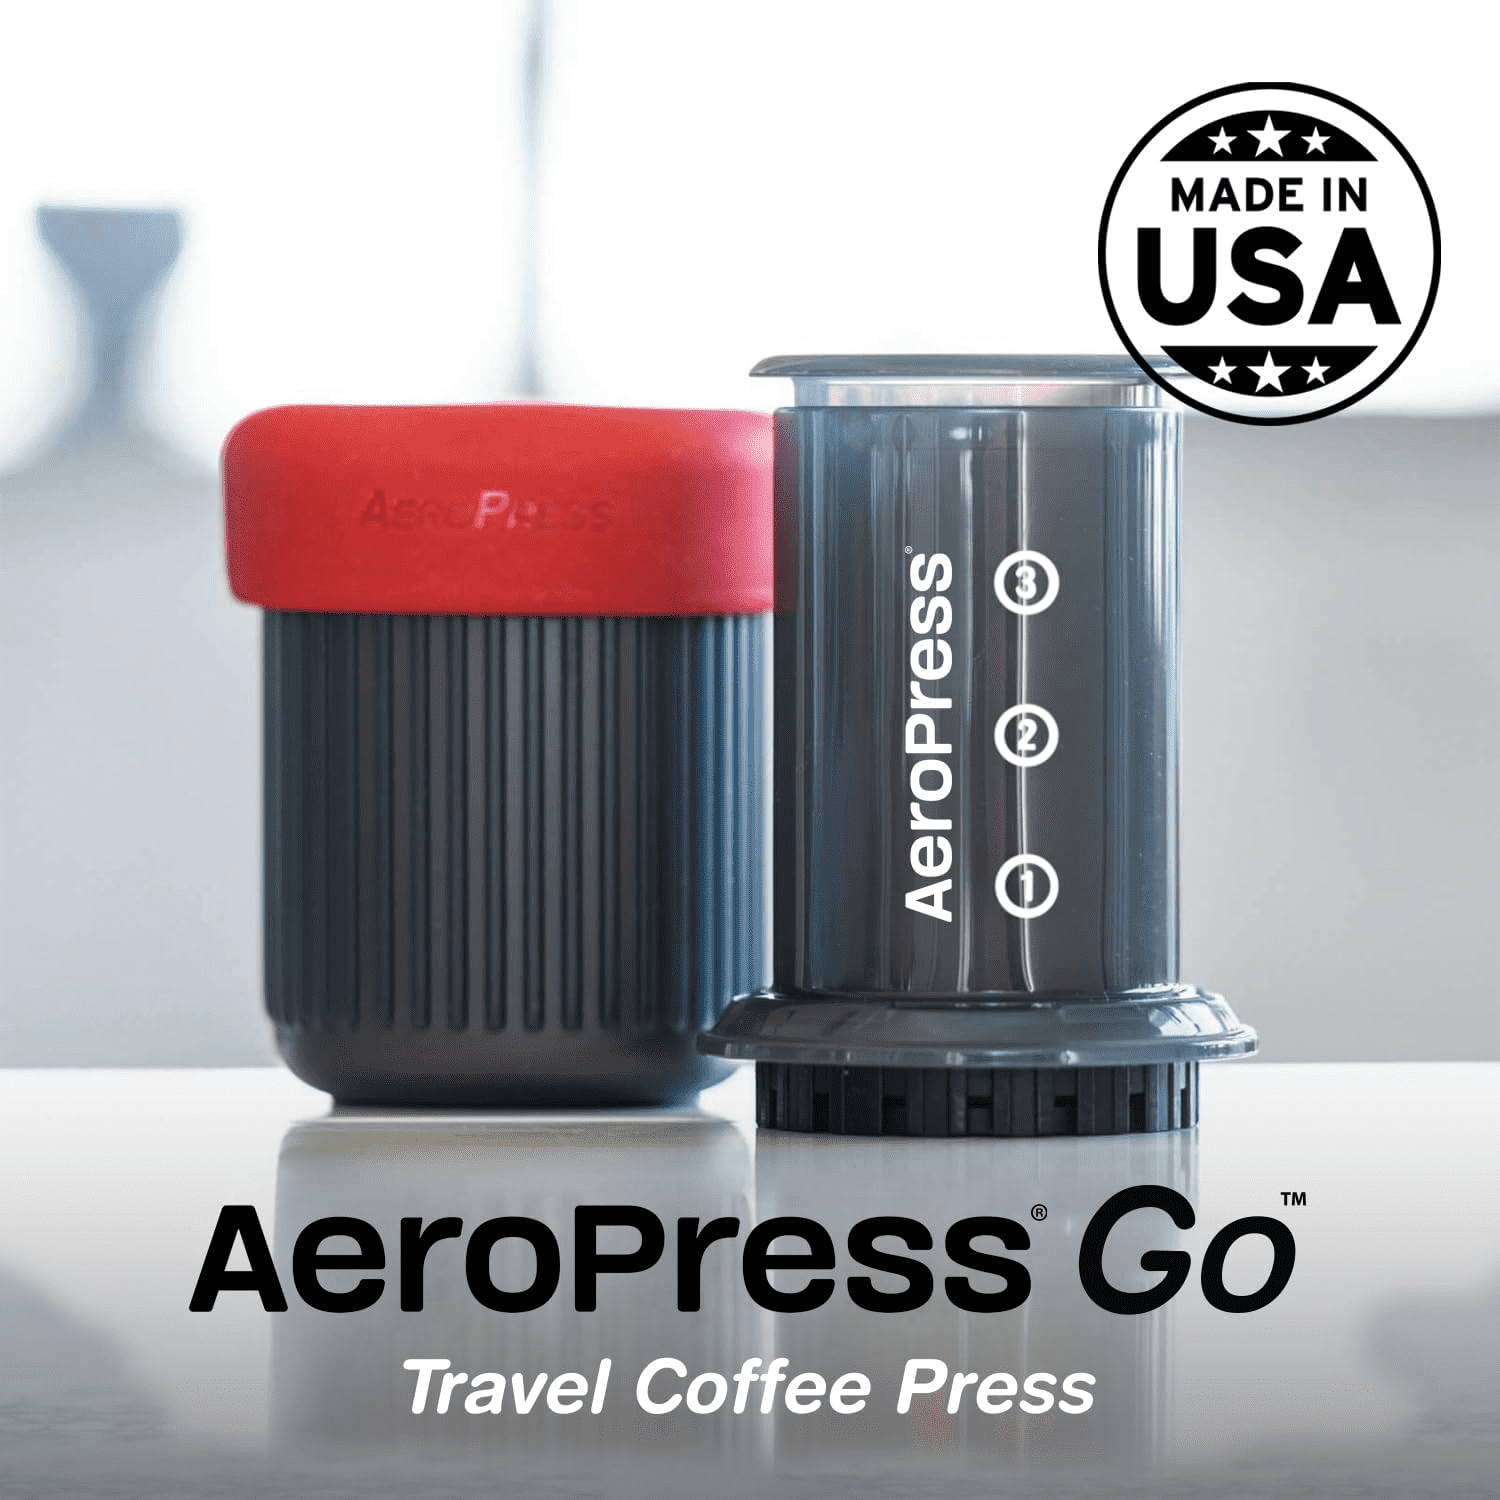 Cafetière de voyage AeroPress Go de Aeropress